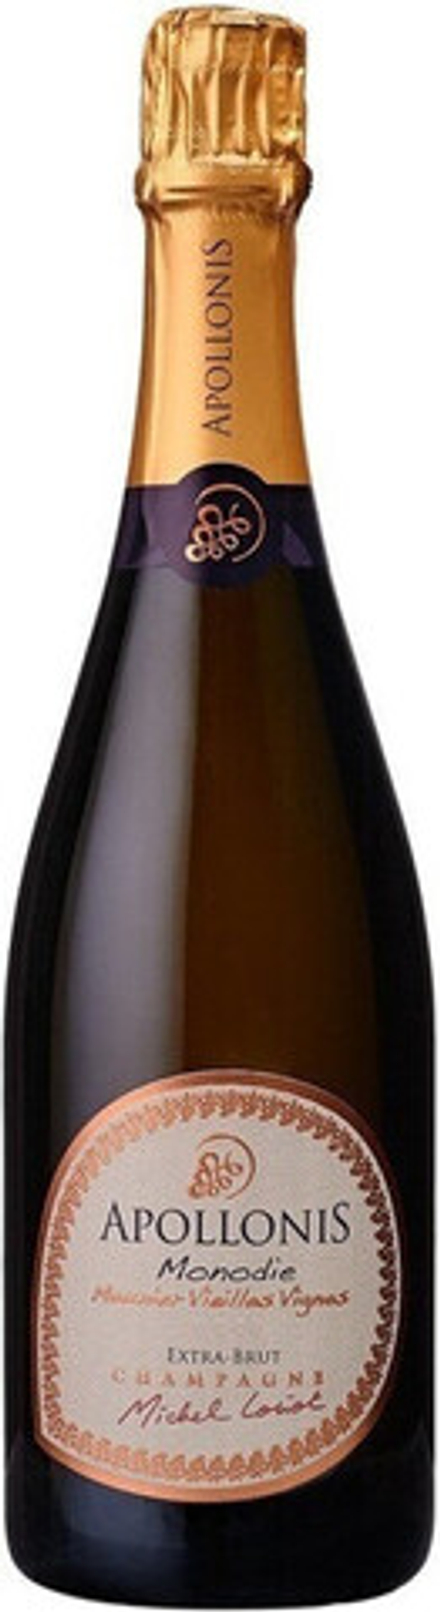 Шампанское Apollonis Monodie Extra Brut Champagne AOC, 0,75 л.